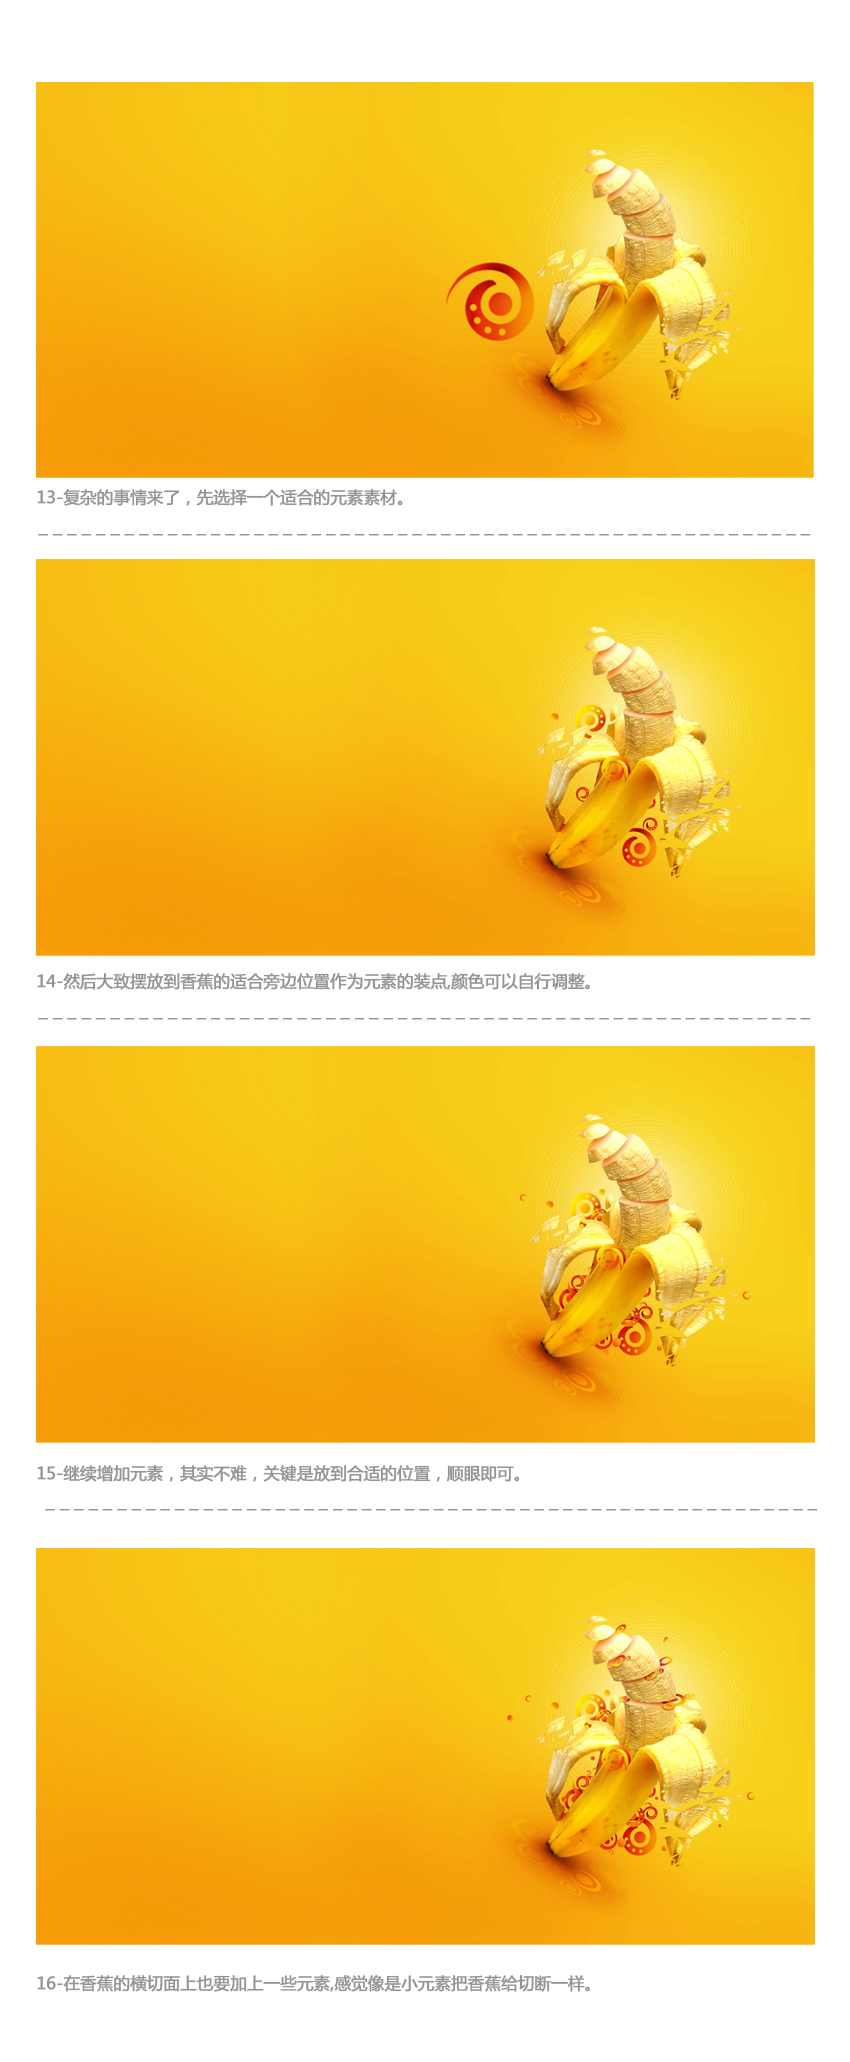 13584979827091 在Photoshop中制作动感时尚的香蕉派对海报